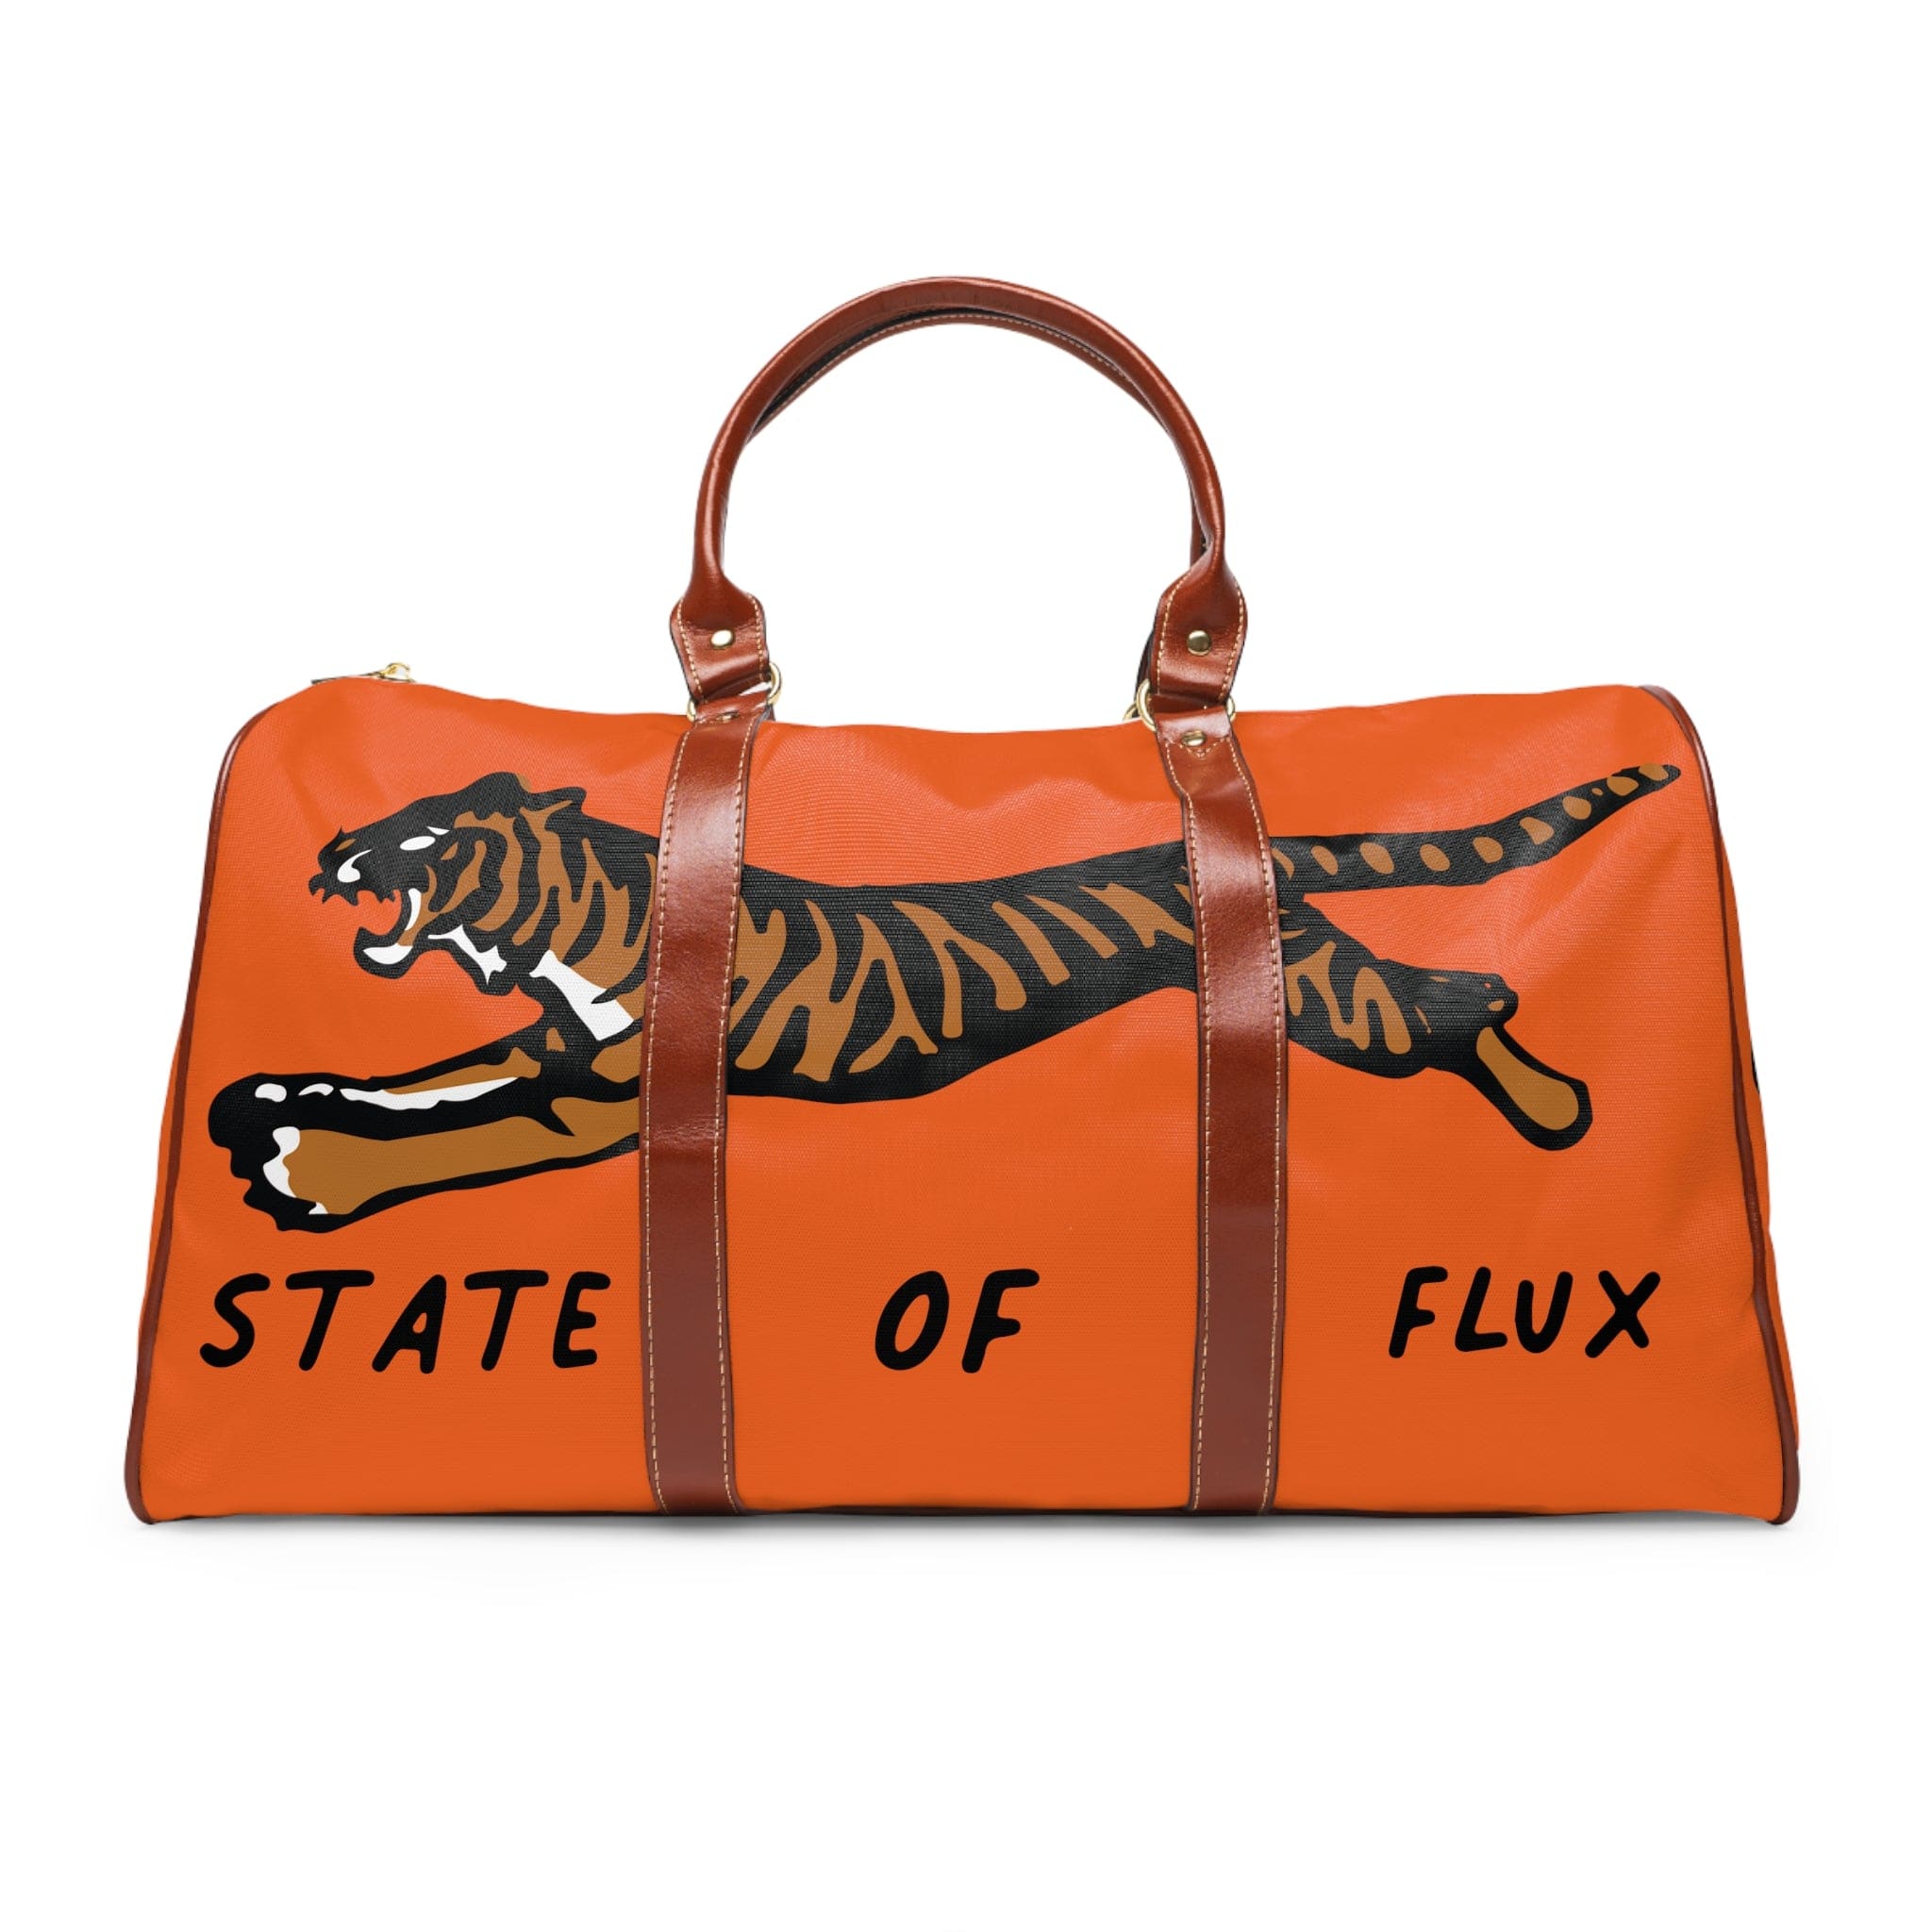 SOF Mojo Weekender Bag in international orange